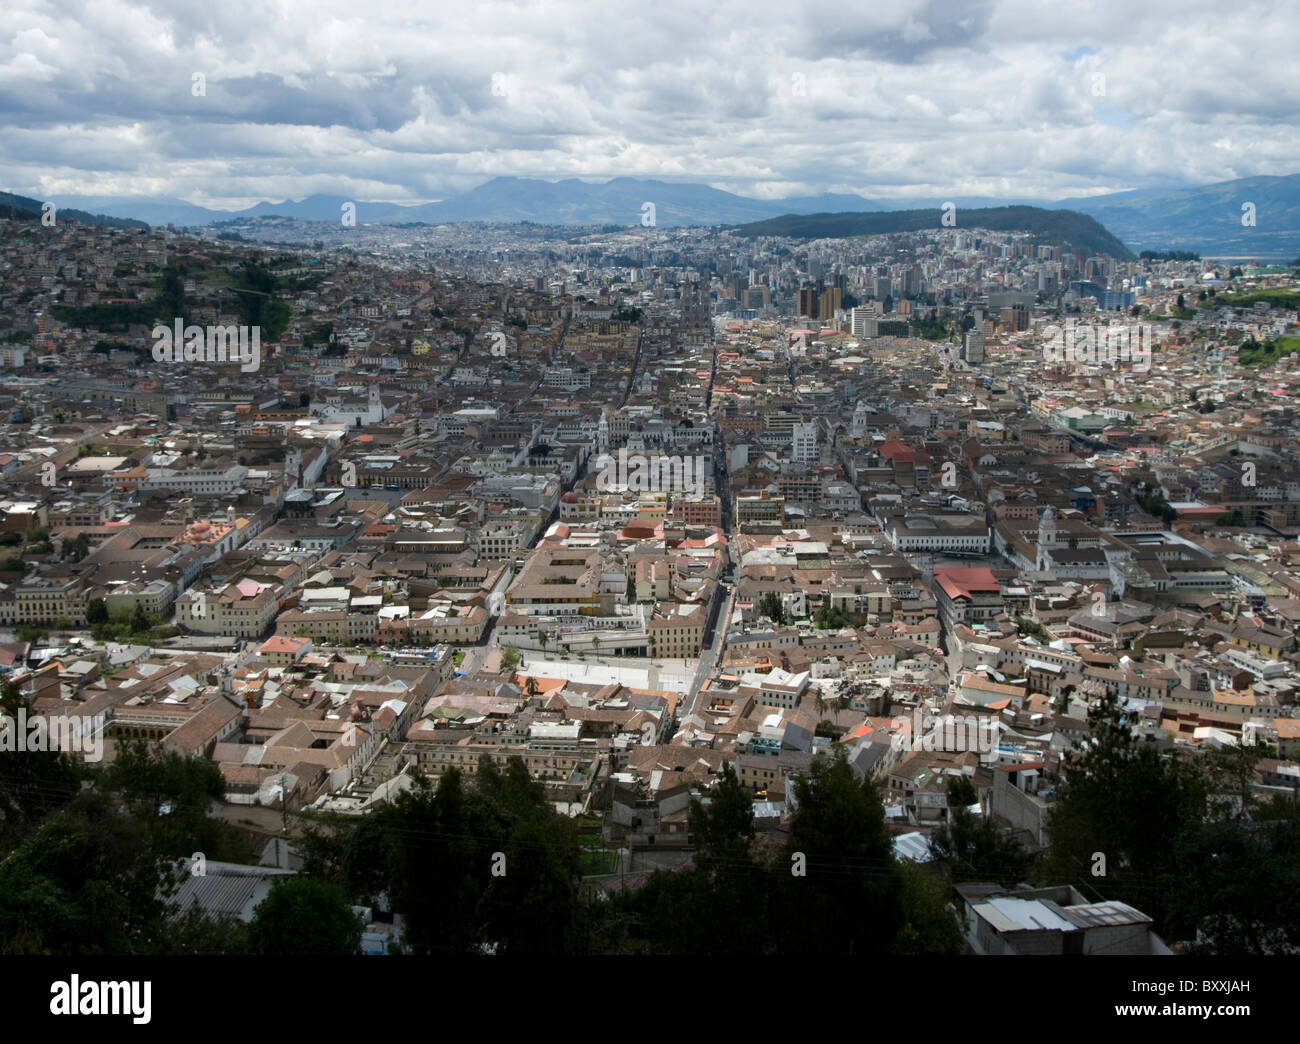 Ecuador. Quito. Historic center and modern city. Stock Photo